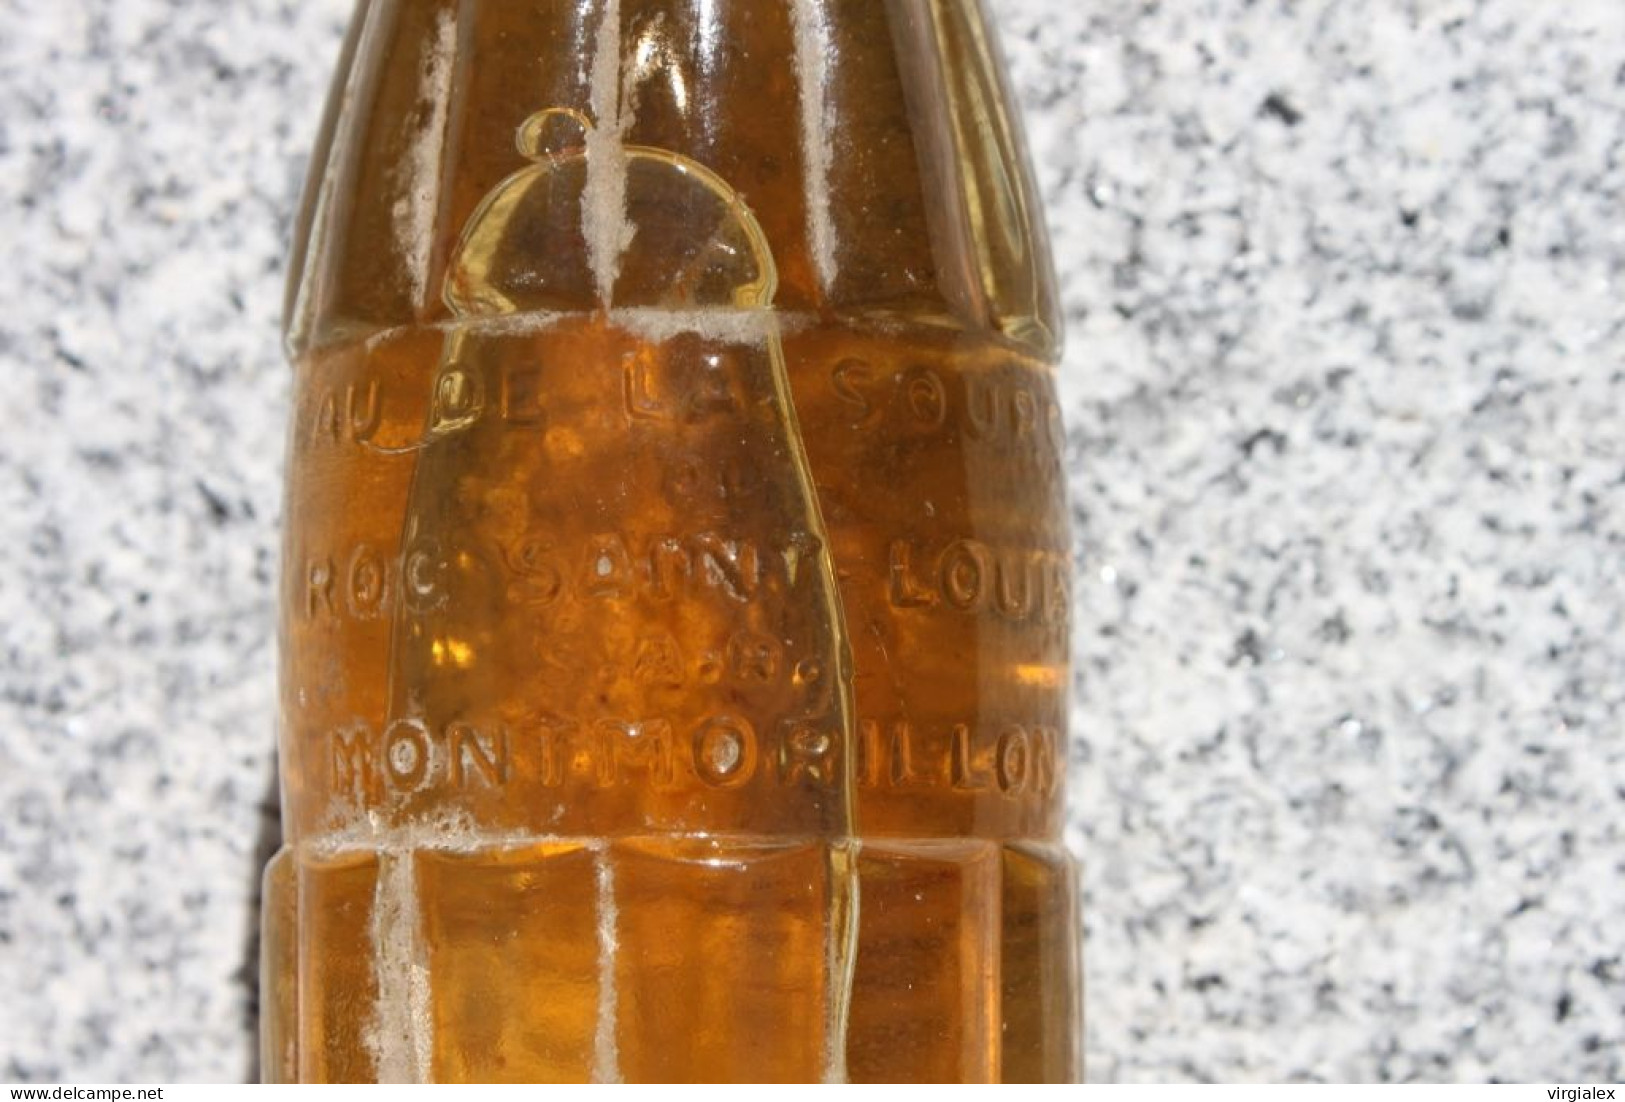 Lot 2 bouteilles anciennes ROC-SAIN - Boisson Ancienne Eau de Source Saint-Louis Montmorillon Vienne